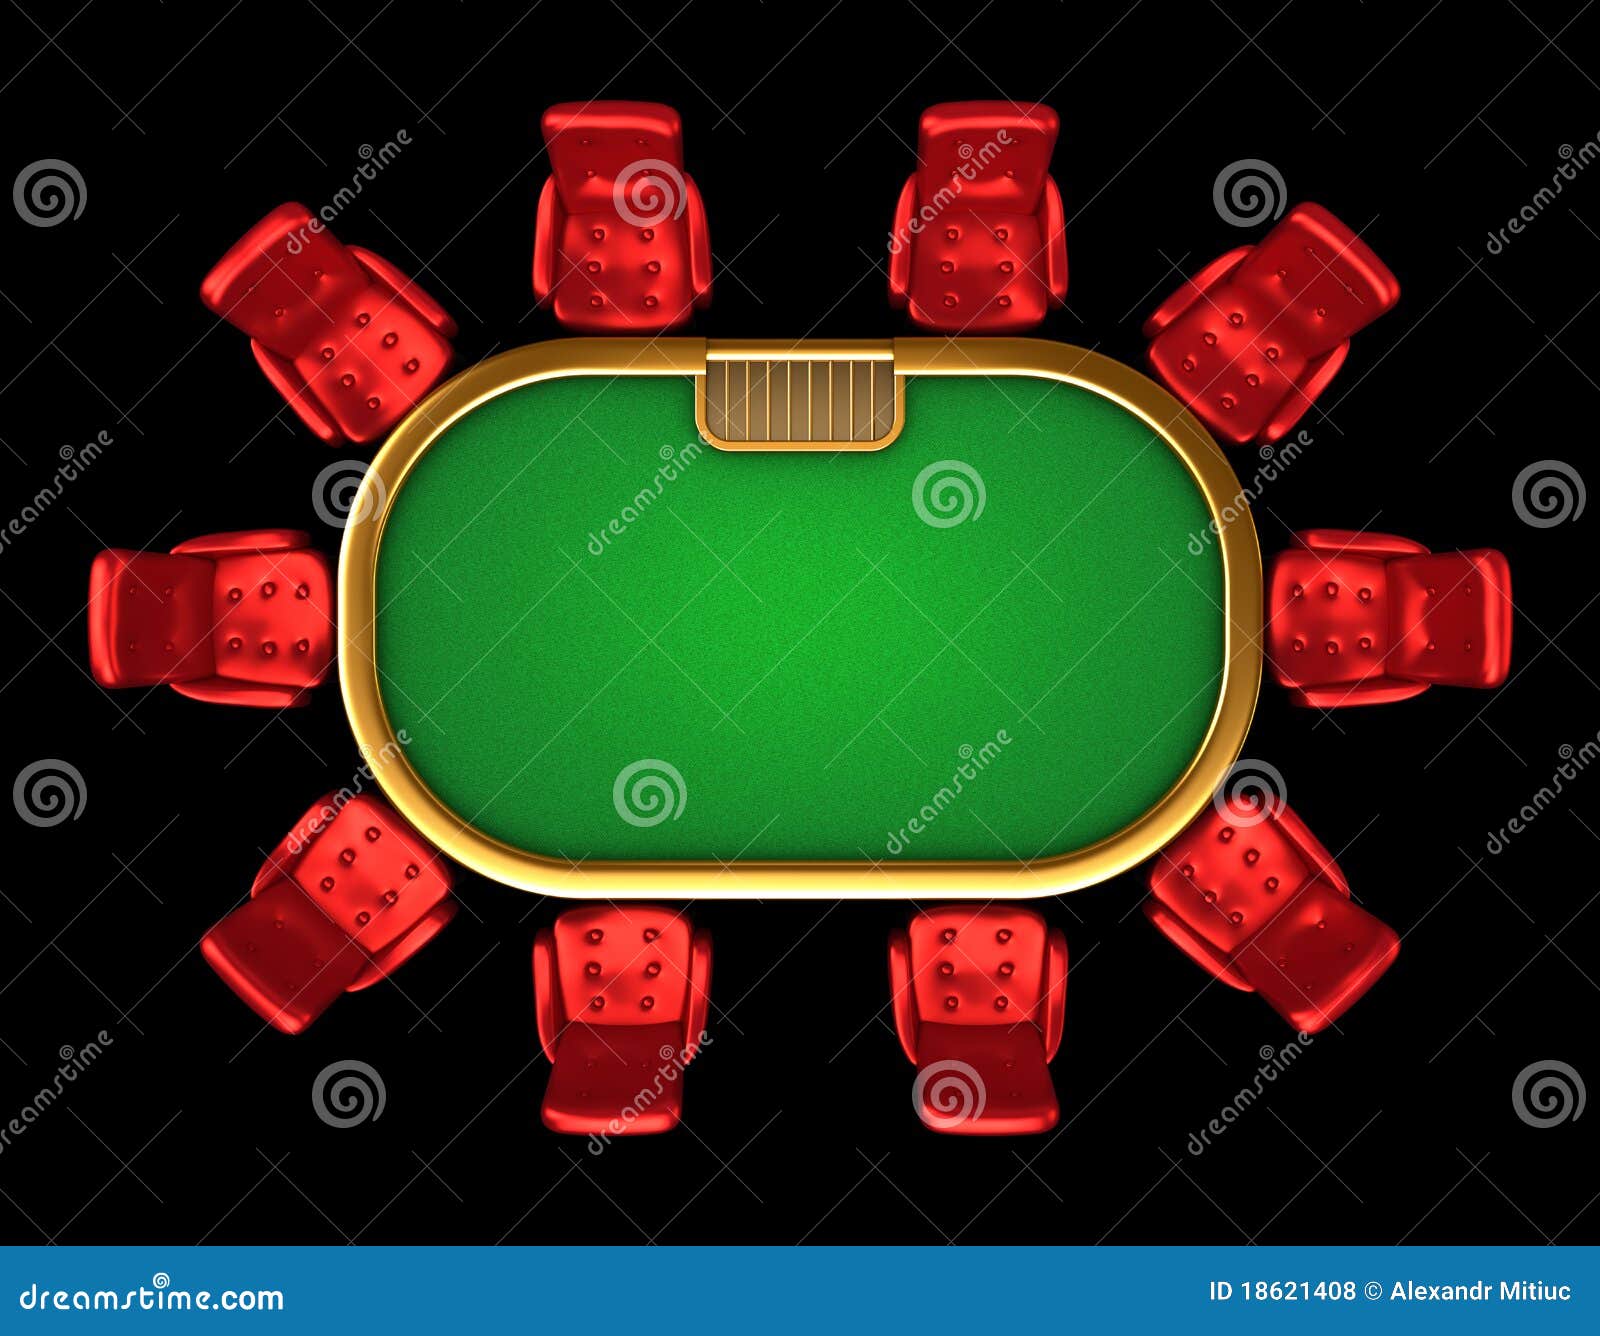 Fortune Poker Room